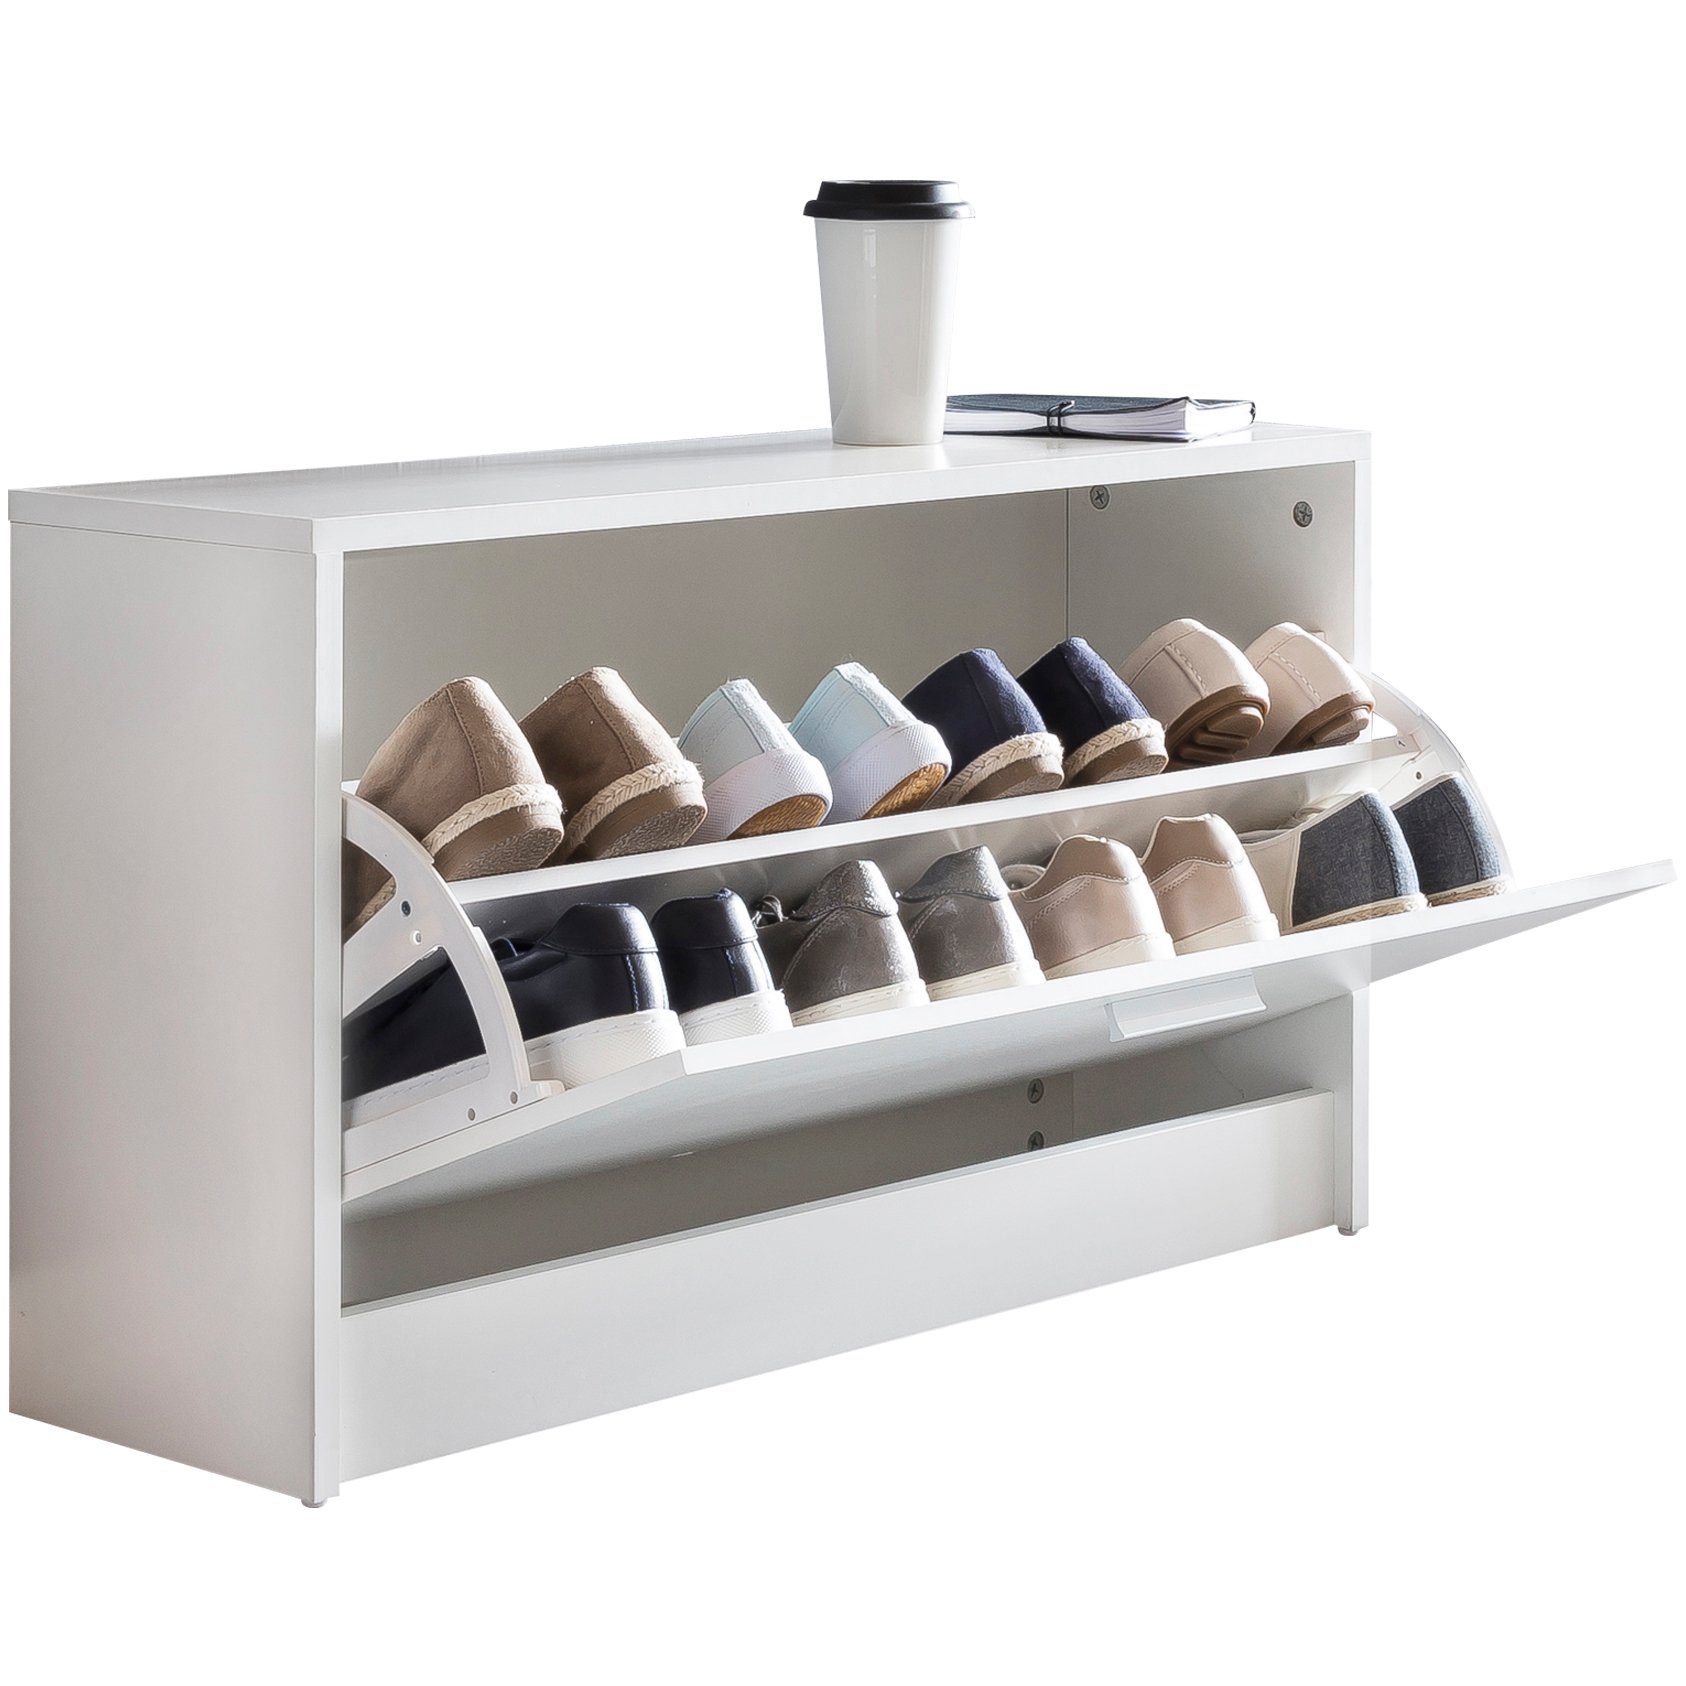 KADIMA DESIGN Schuhschrank Holz Schuhkipper Bank mit Ablagefach & 2 Unterfächern Weiß | Schuhschränke